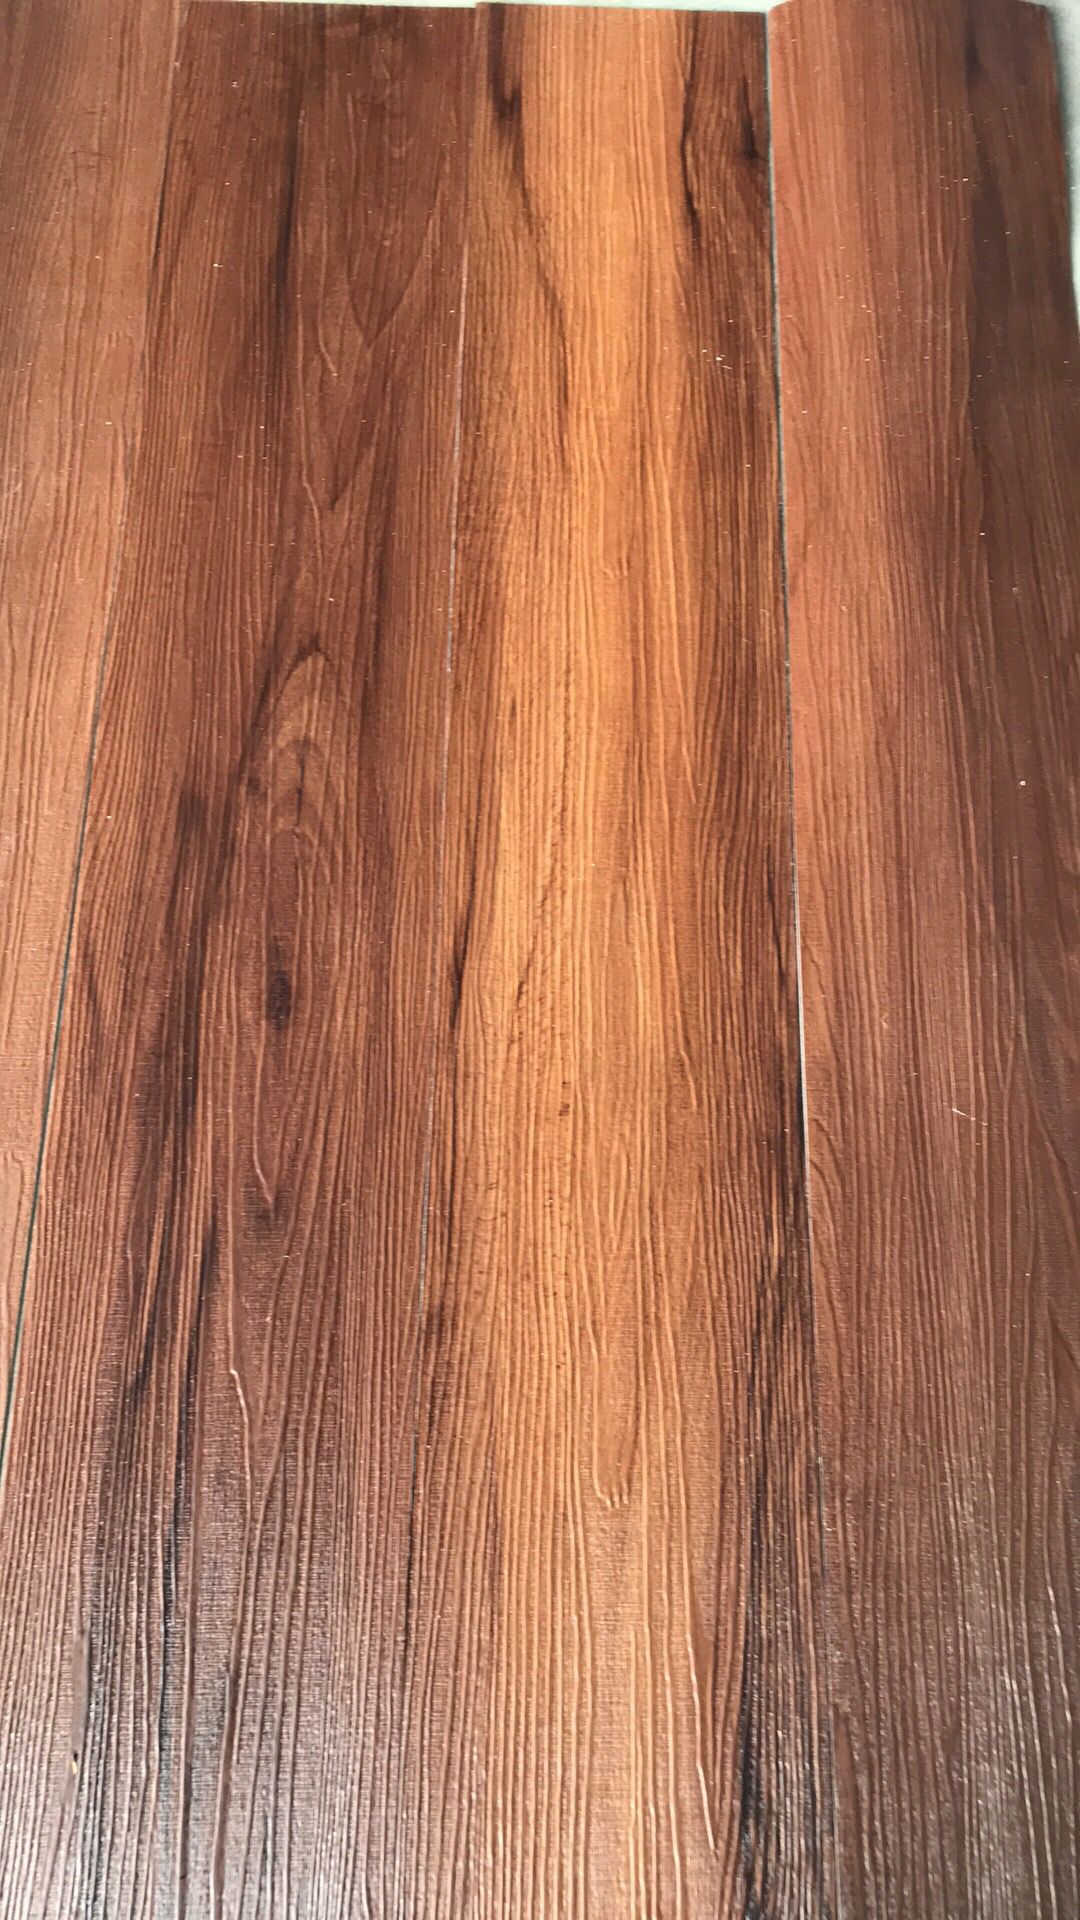 Beautiful Cherry wood color vinyl floor